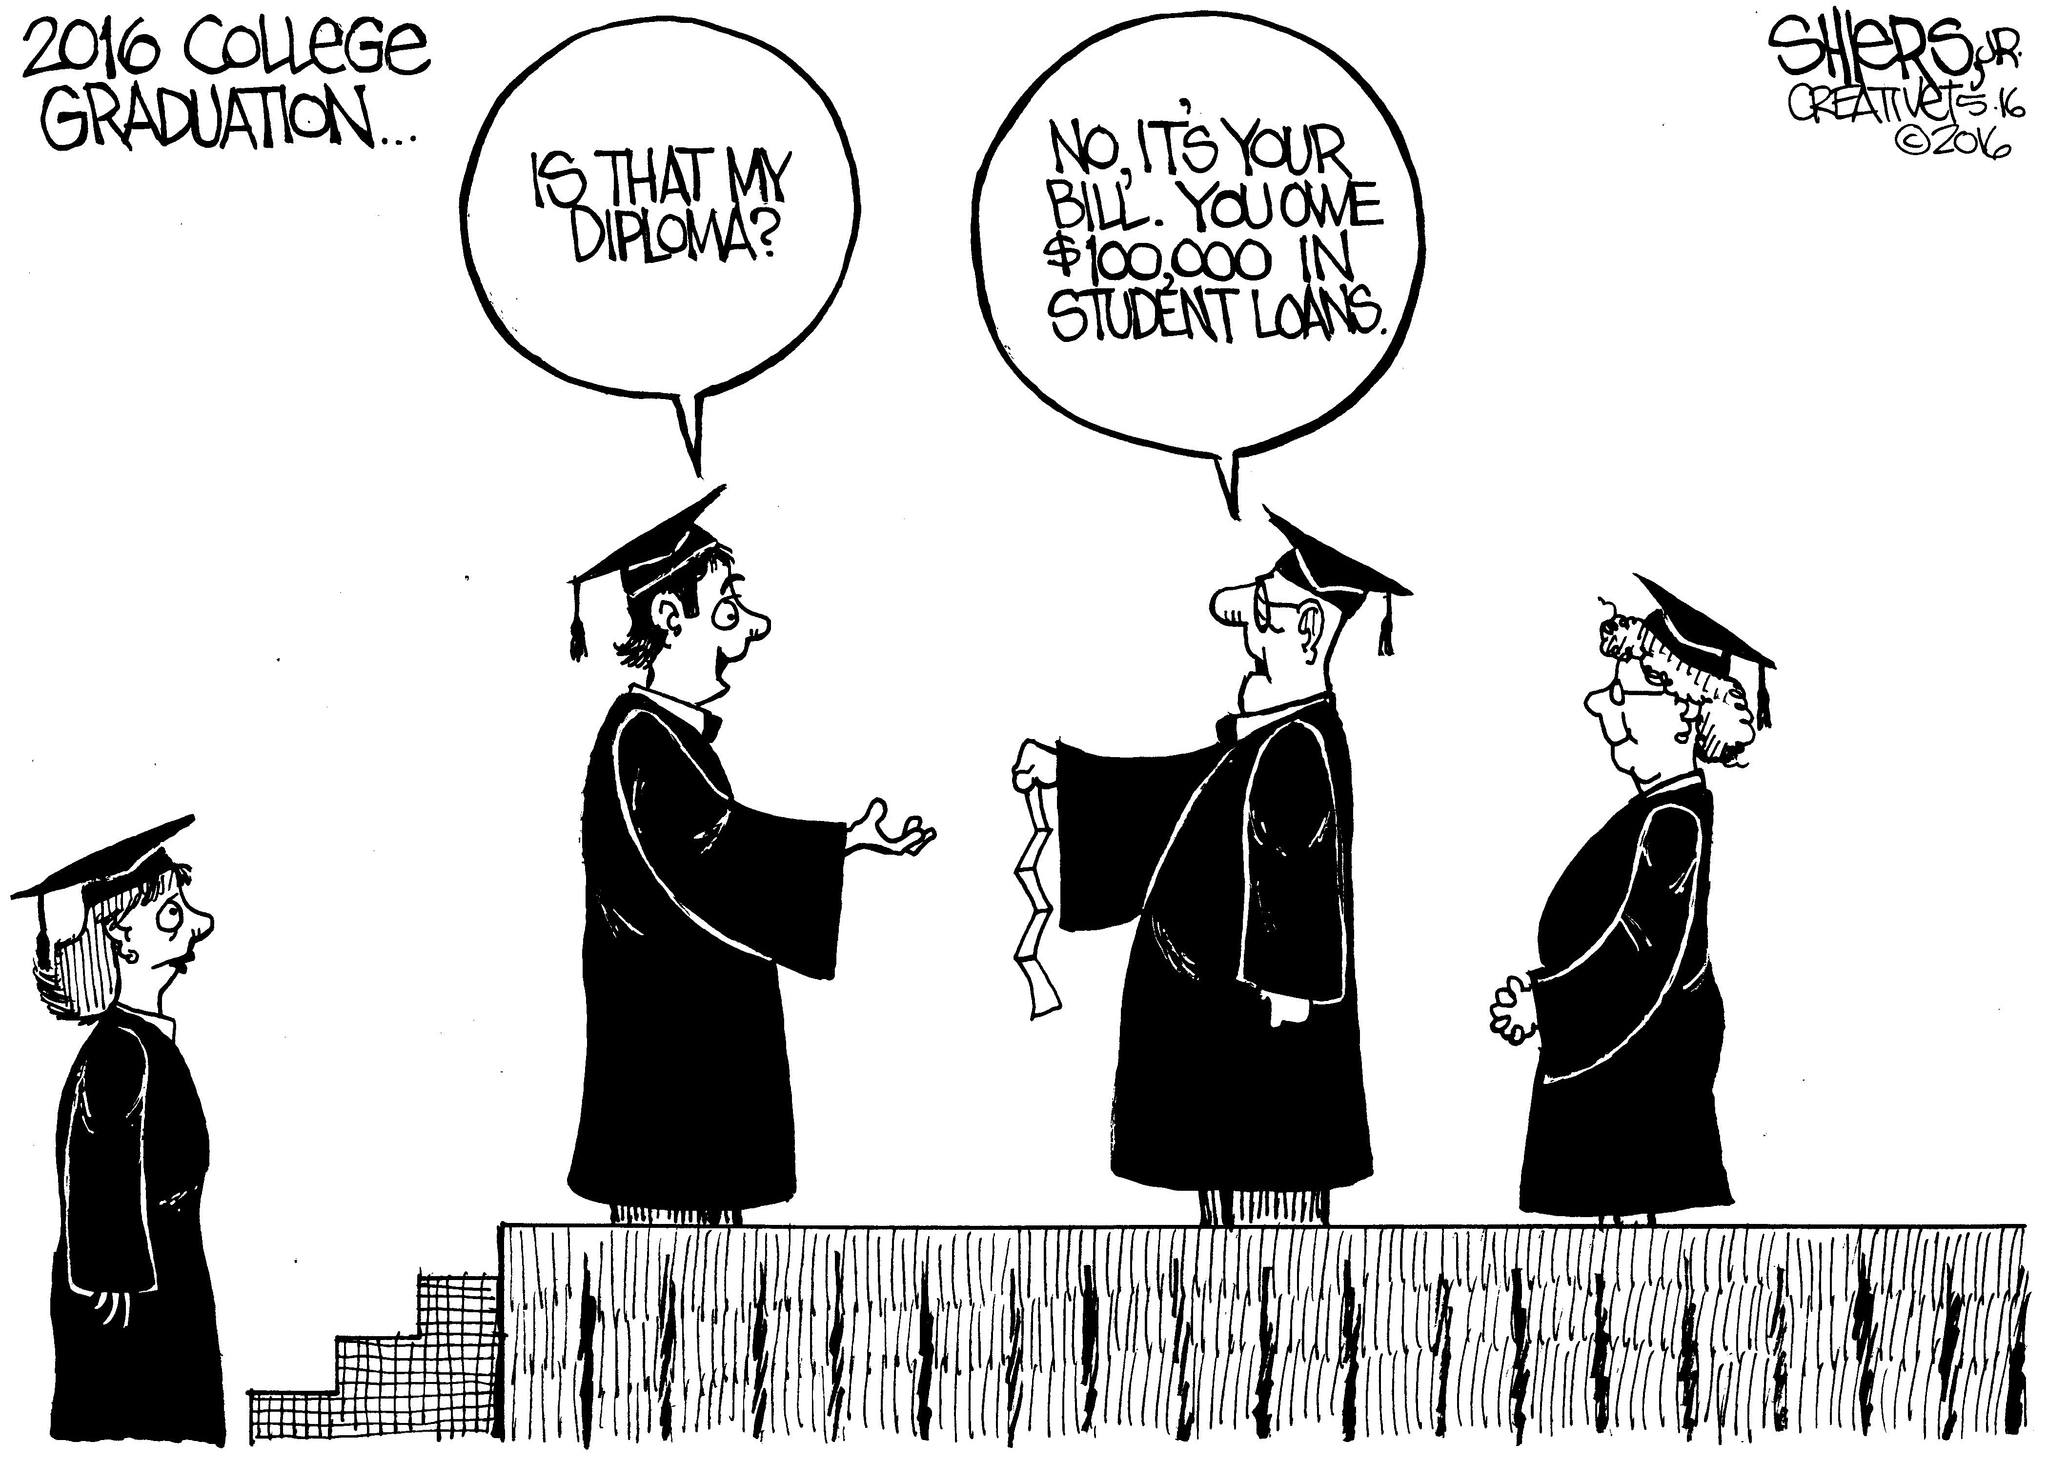 Diploma Cartoon - Cap cartoon diploma graduation vectors (1,957 ...